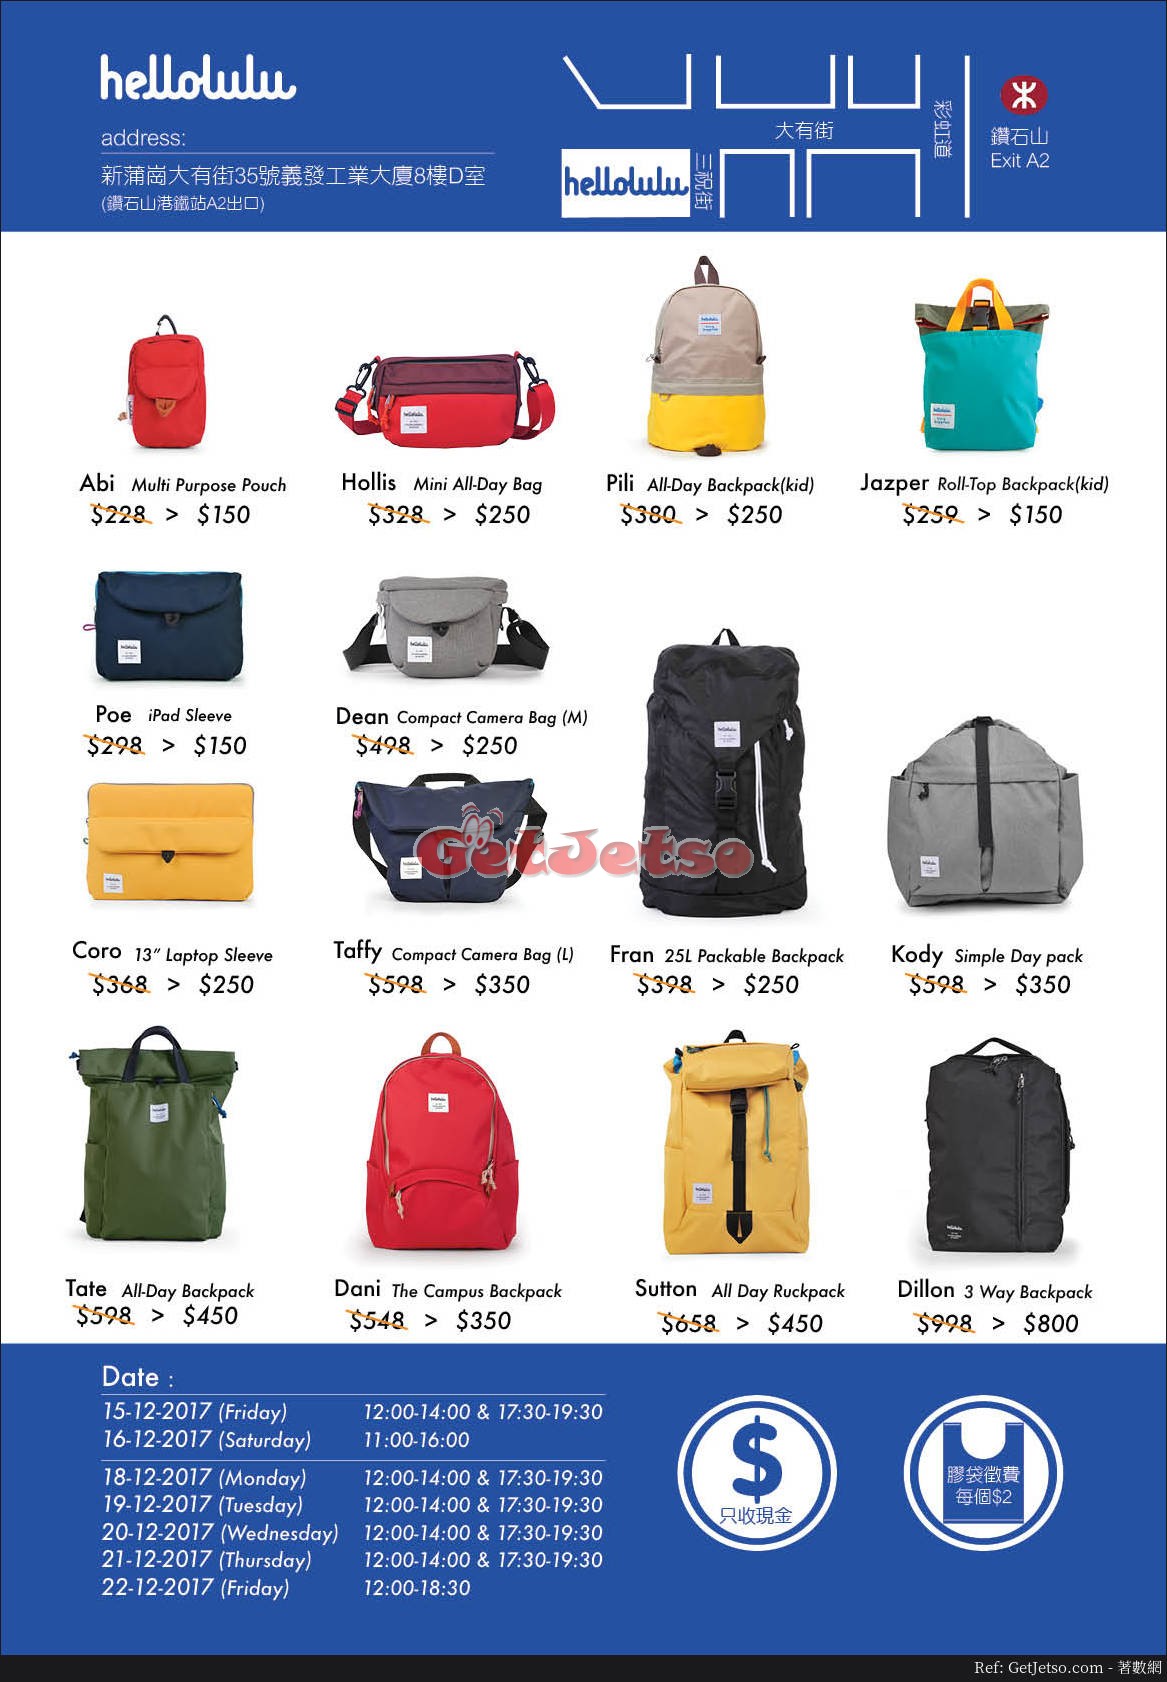 hellolulu 休閒袋款、相機袋、童裝袋低至半價開倉優惠(17年12月15-22日)圖片2